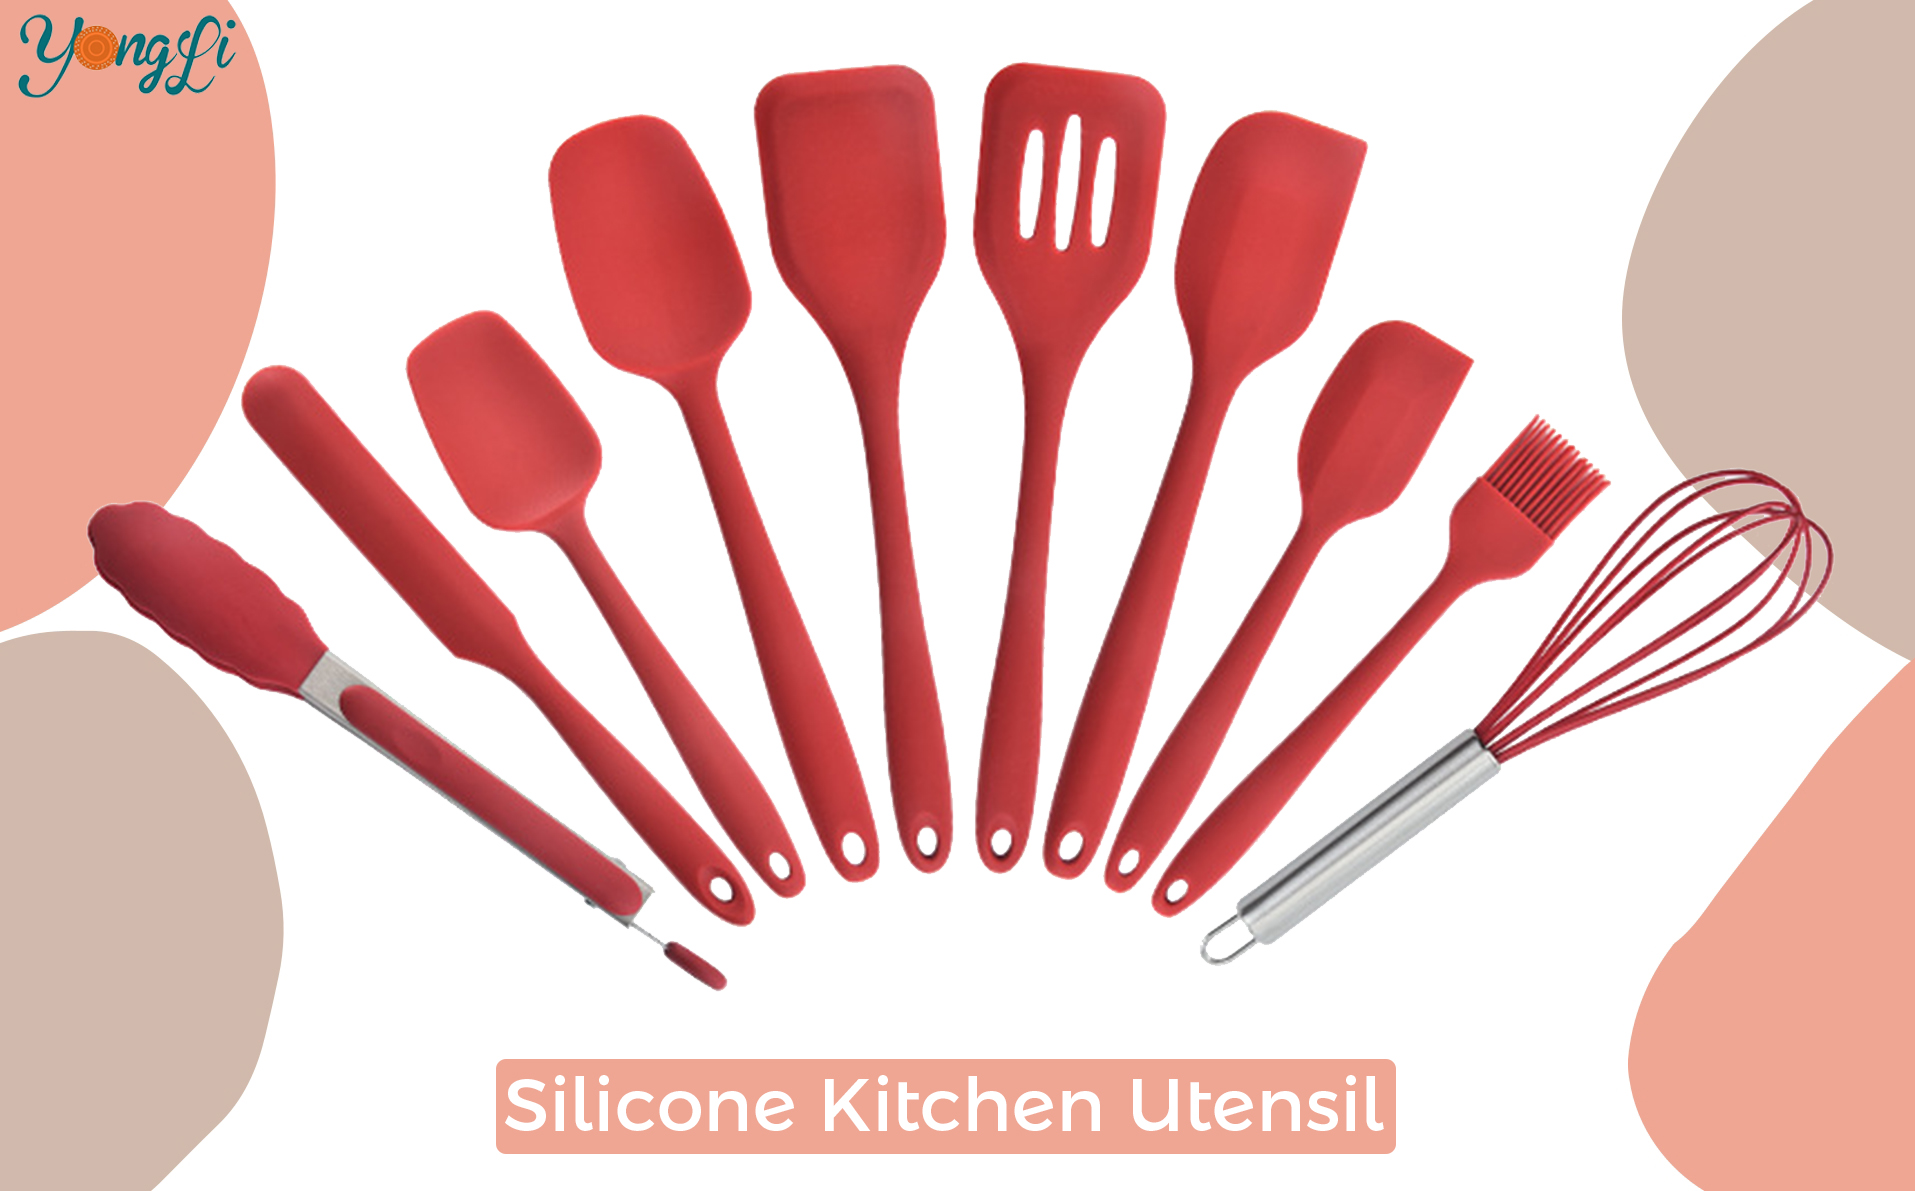 Cerchi utensili da cucina in silicone?|Yongli